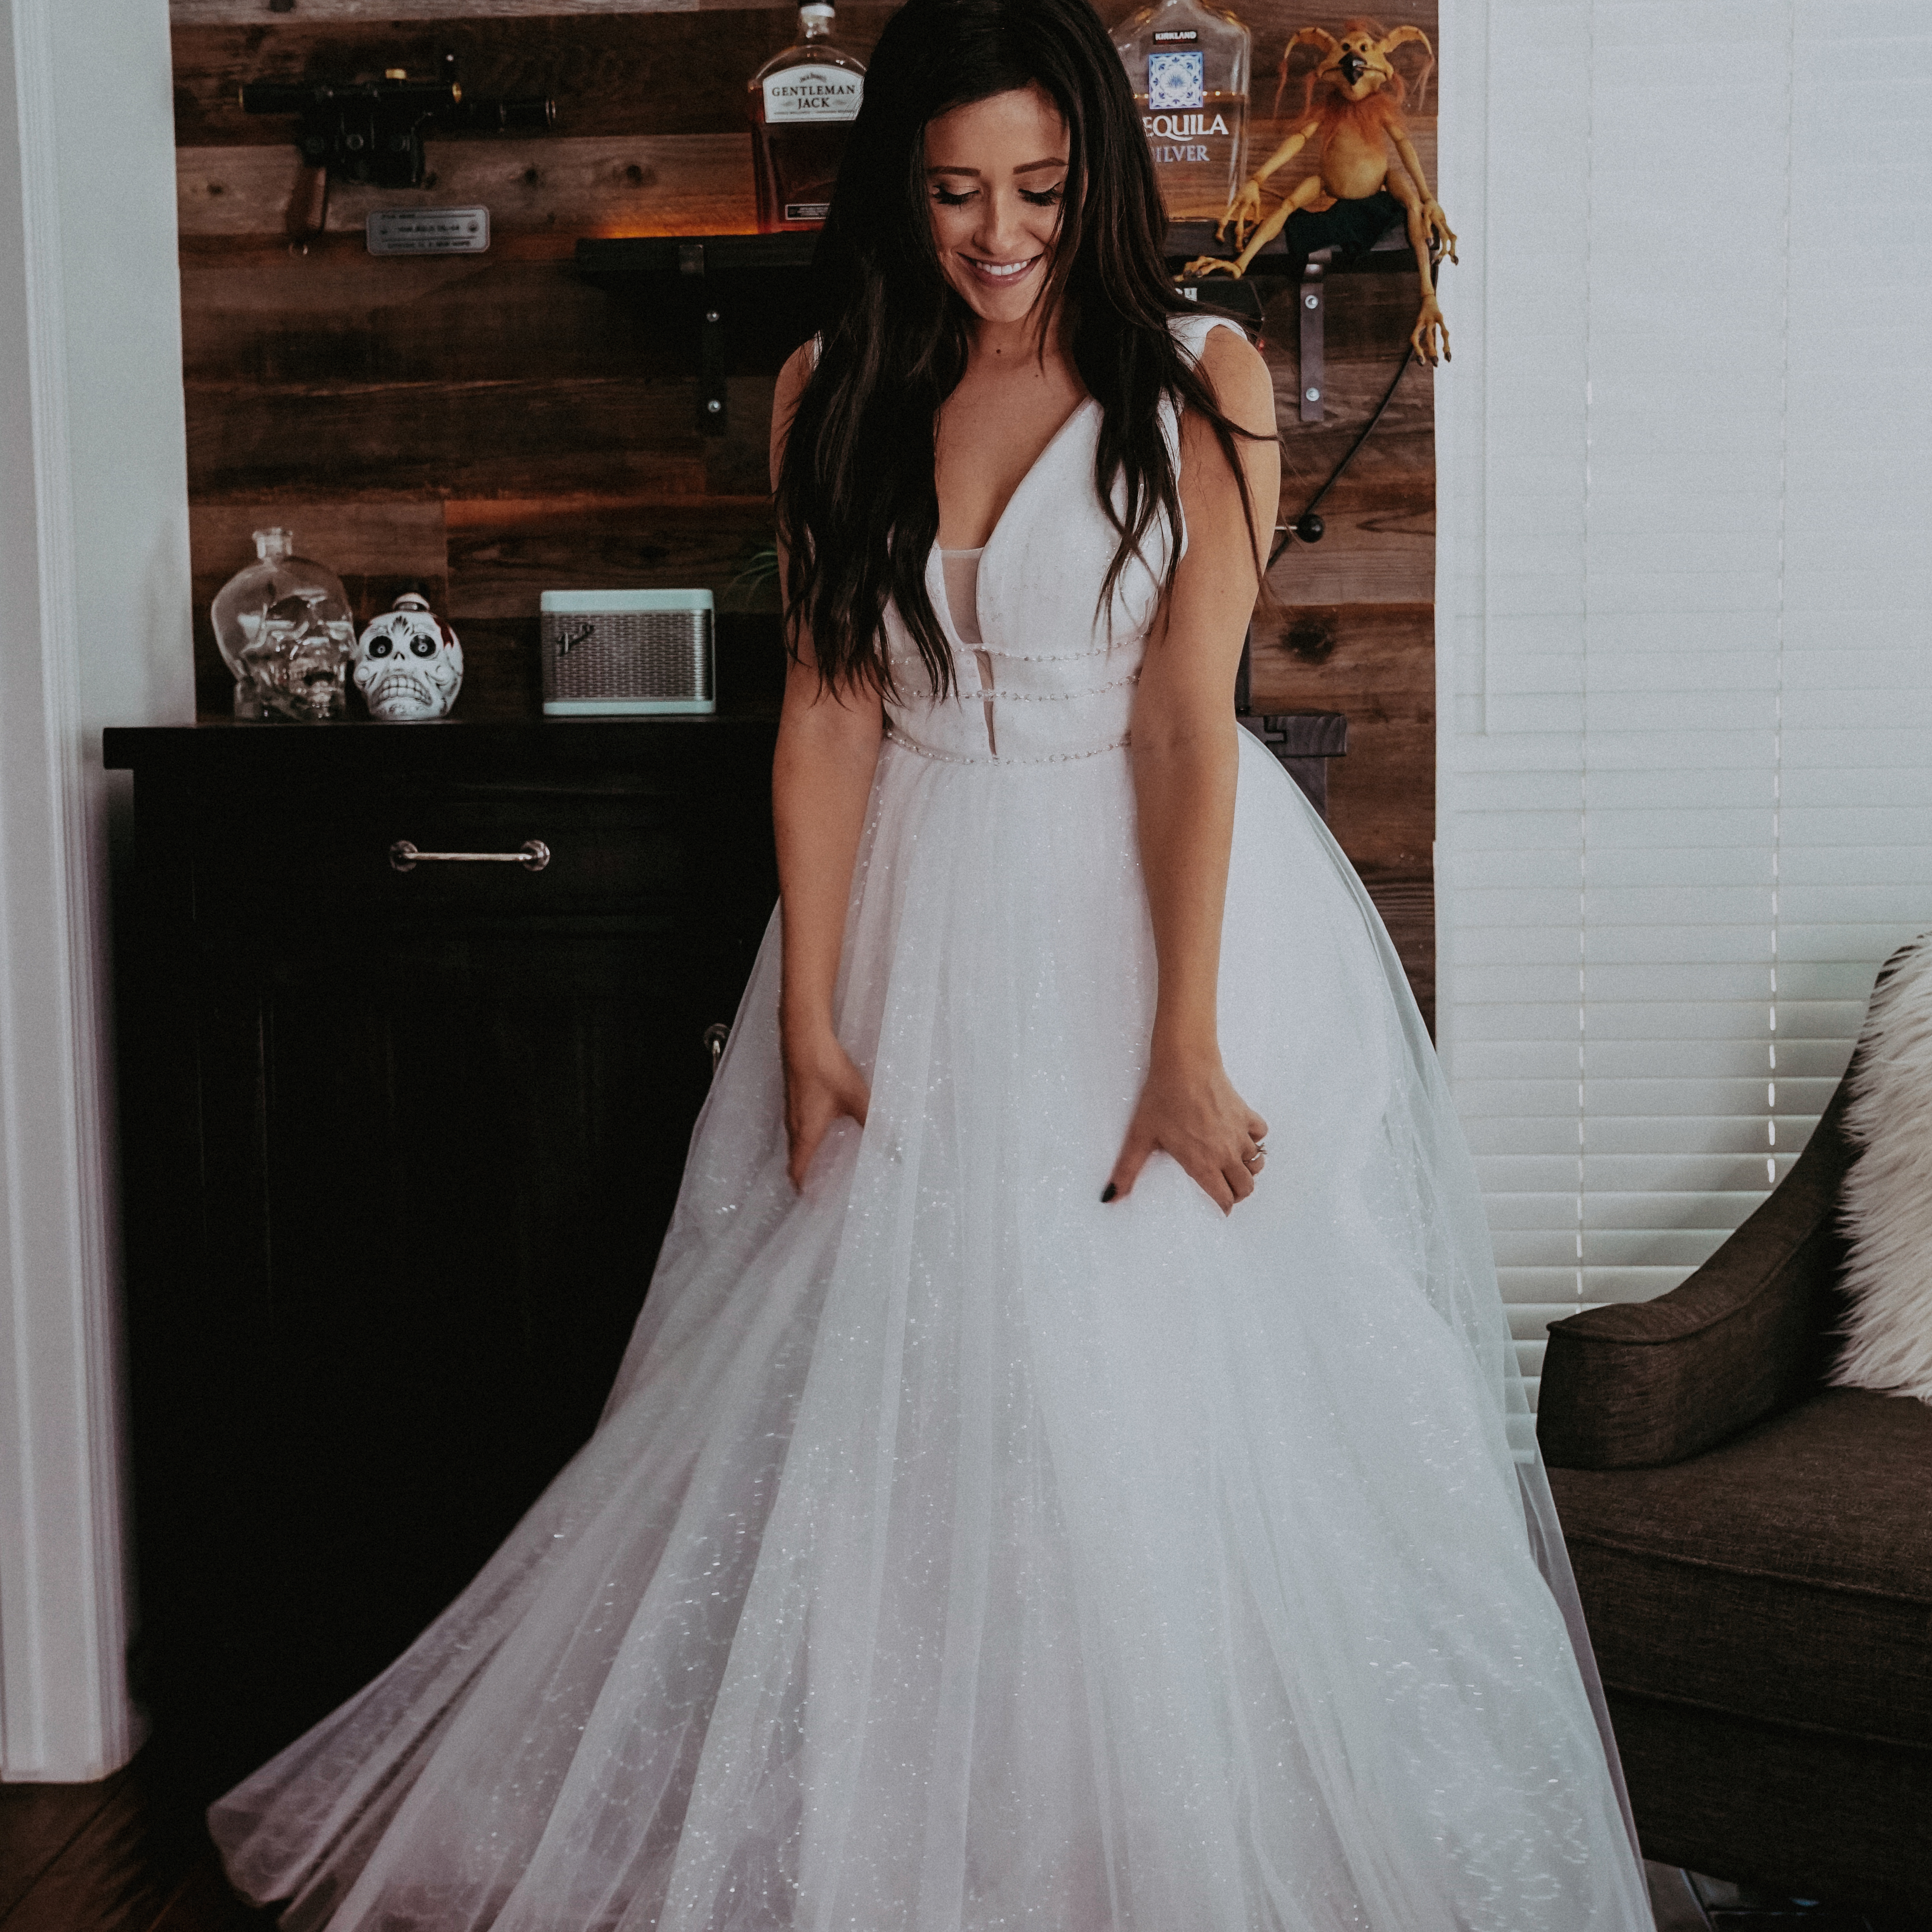 Inexpensive Wedding Dresses Under 100 on Amazon